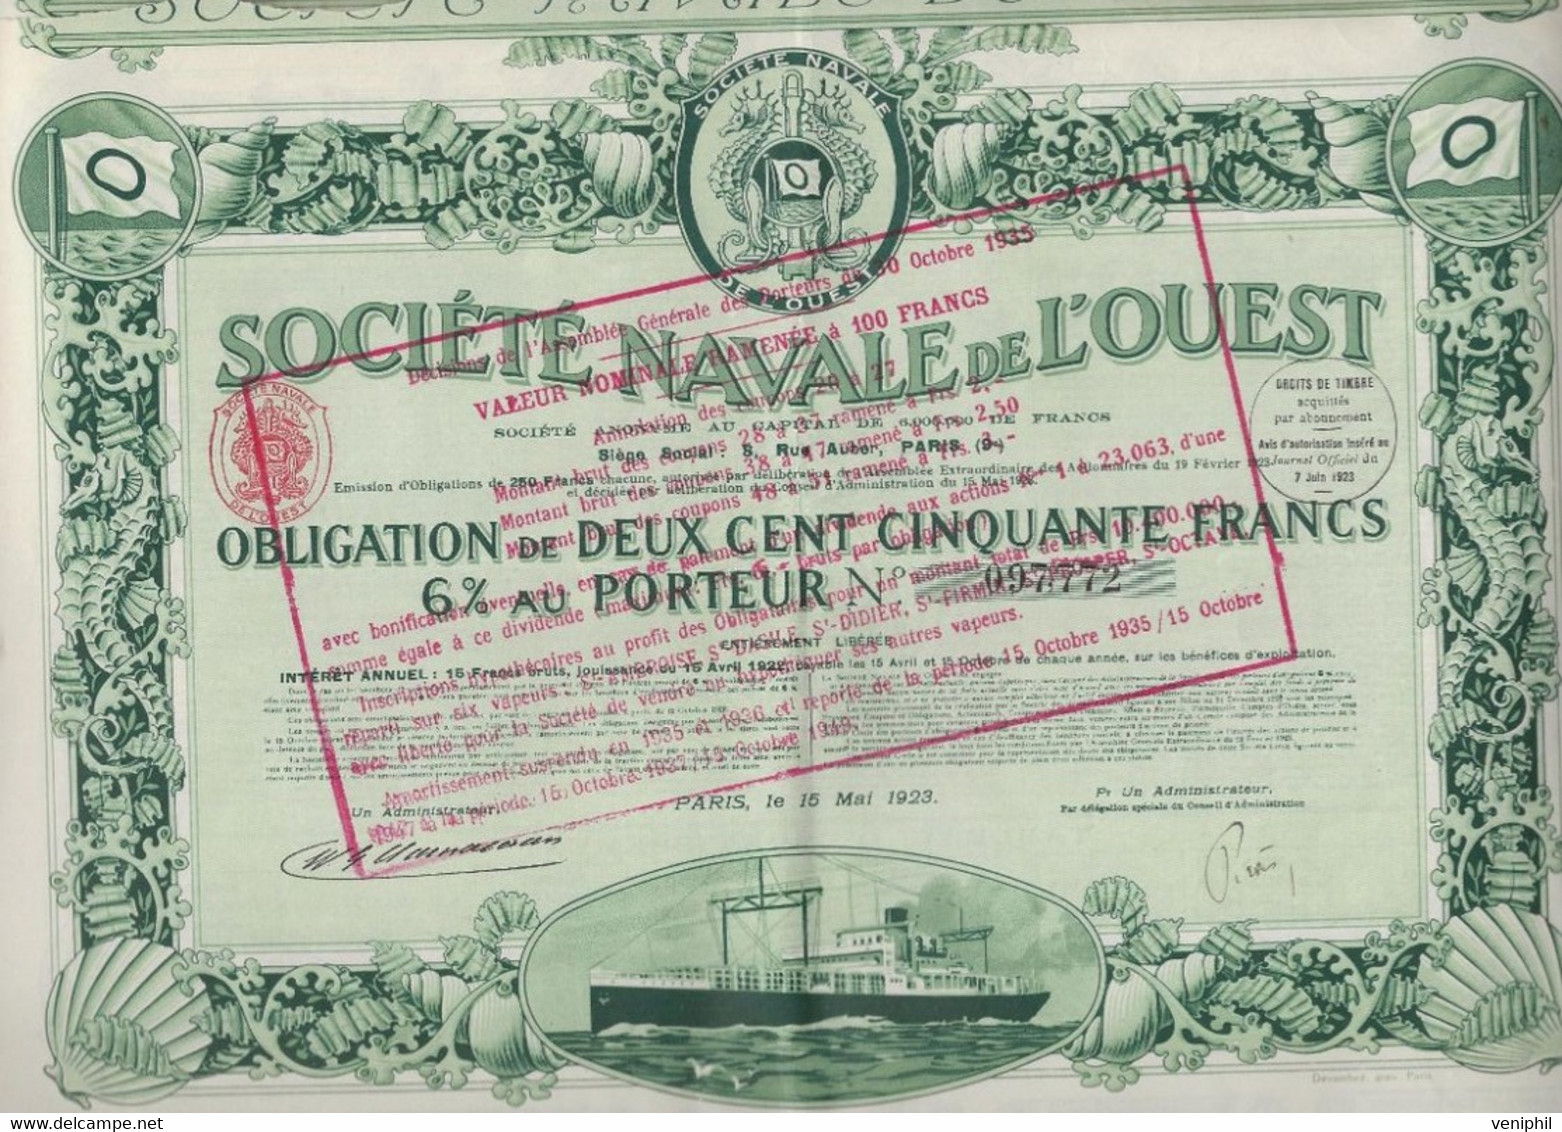 SOCIETE NAVALE DE L'OUEST -  OBLIGATION DE 250 FRS 6% AU PORTEUR - ANNEE 1923 - Navigazione